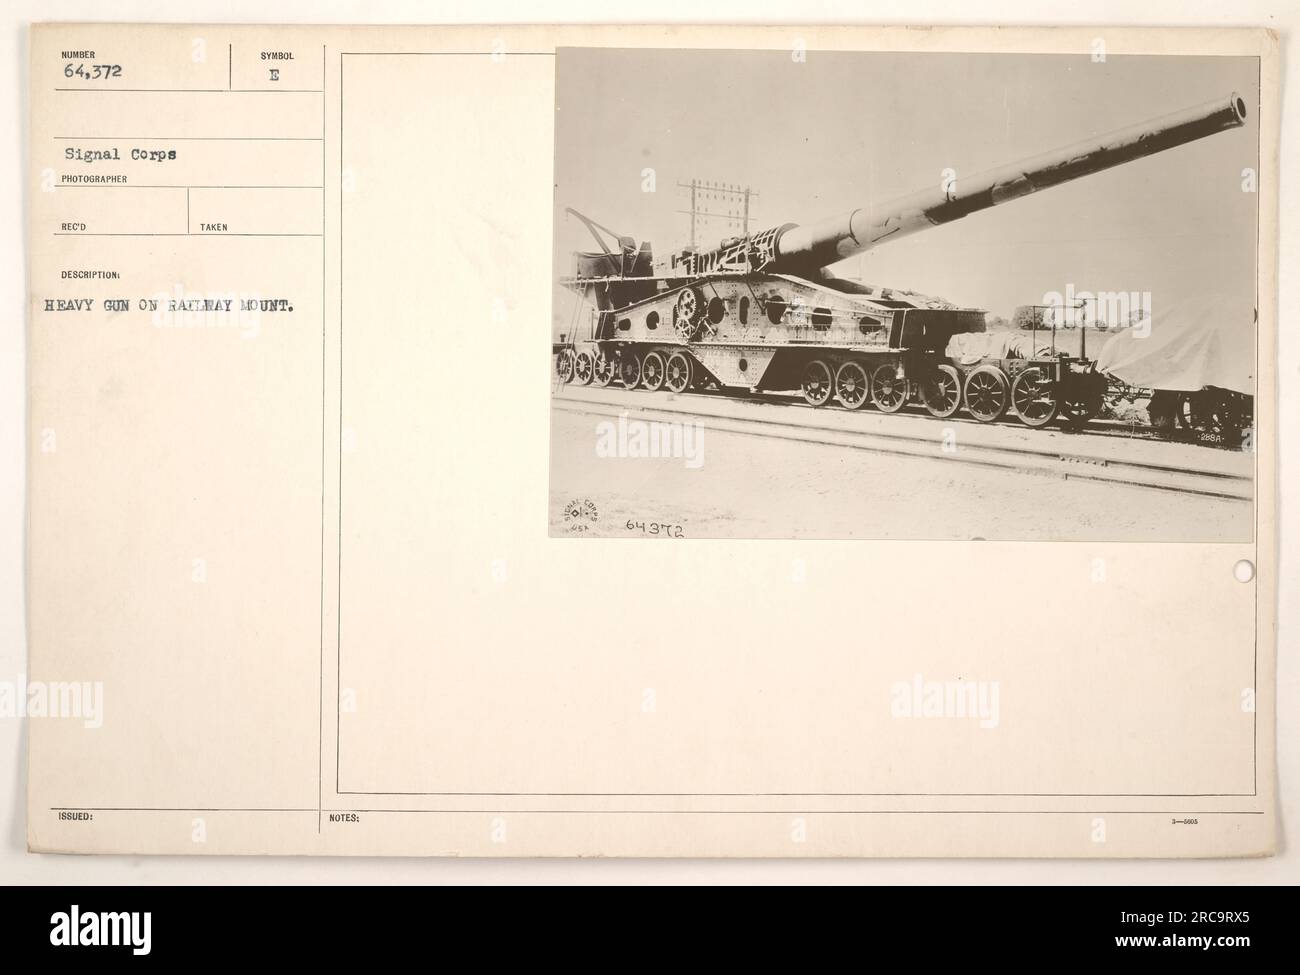 Fotografia di una pistola pesante montata su un binario ferroviario. Il cannone è numerato 64.372 e faceva parte delle attività militari durante la prima guerra mondiale. Si tratta di un ricordo del fotografo del corpo di segnale ed è stato scattato e rilasciato con il simbolo I. Ulteriori note menzionano che il cannone era su un supporto ferroviario, etichettato come Doudo 64372. Foto Stock